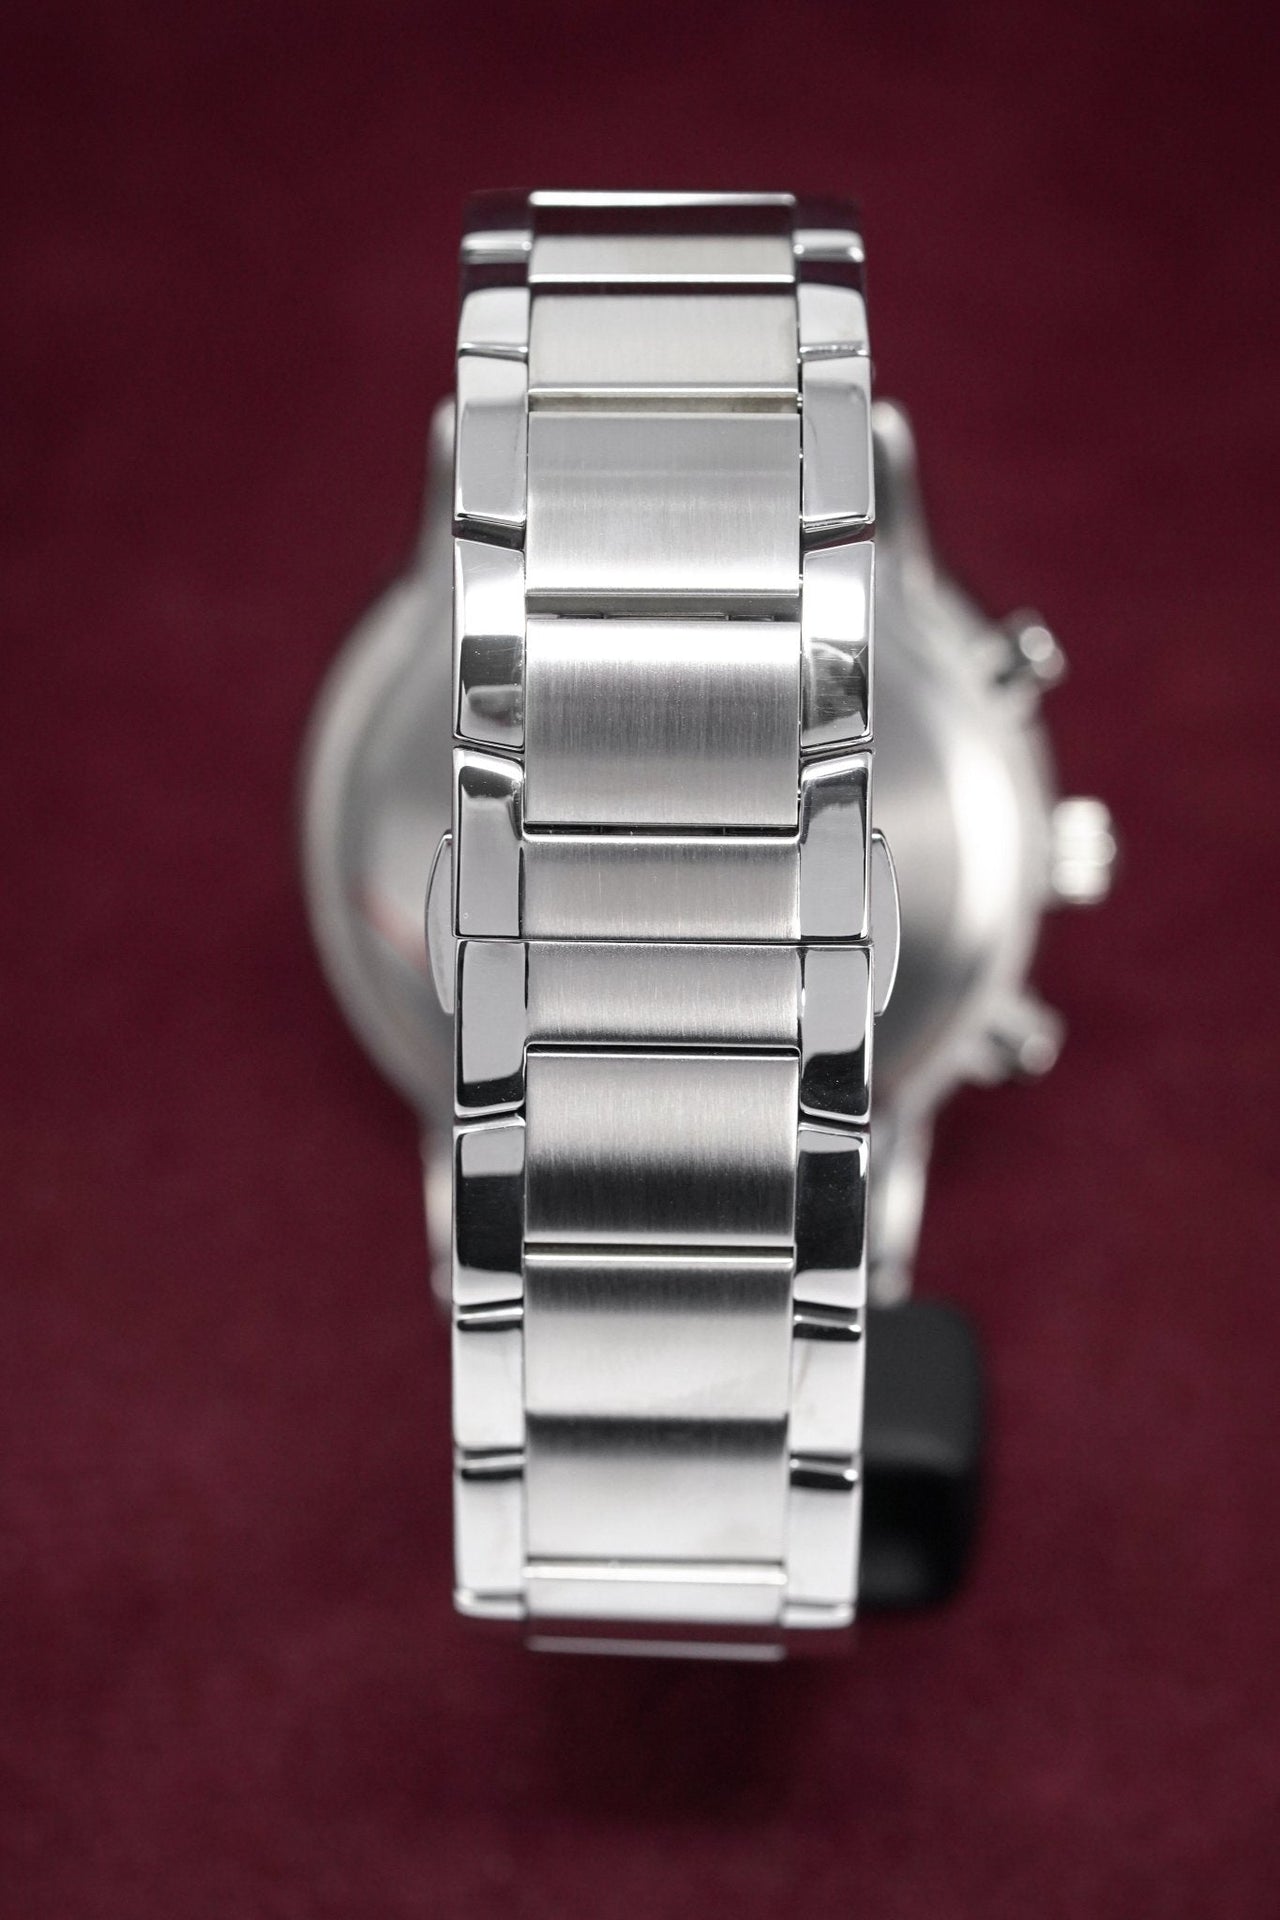 Emporio Armani Men's Renato Chronograph Watch Steel AR2458 - Watches & Crystals